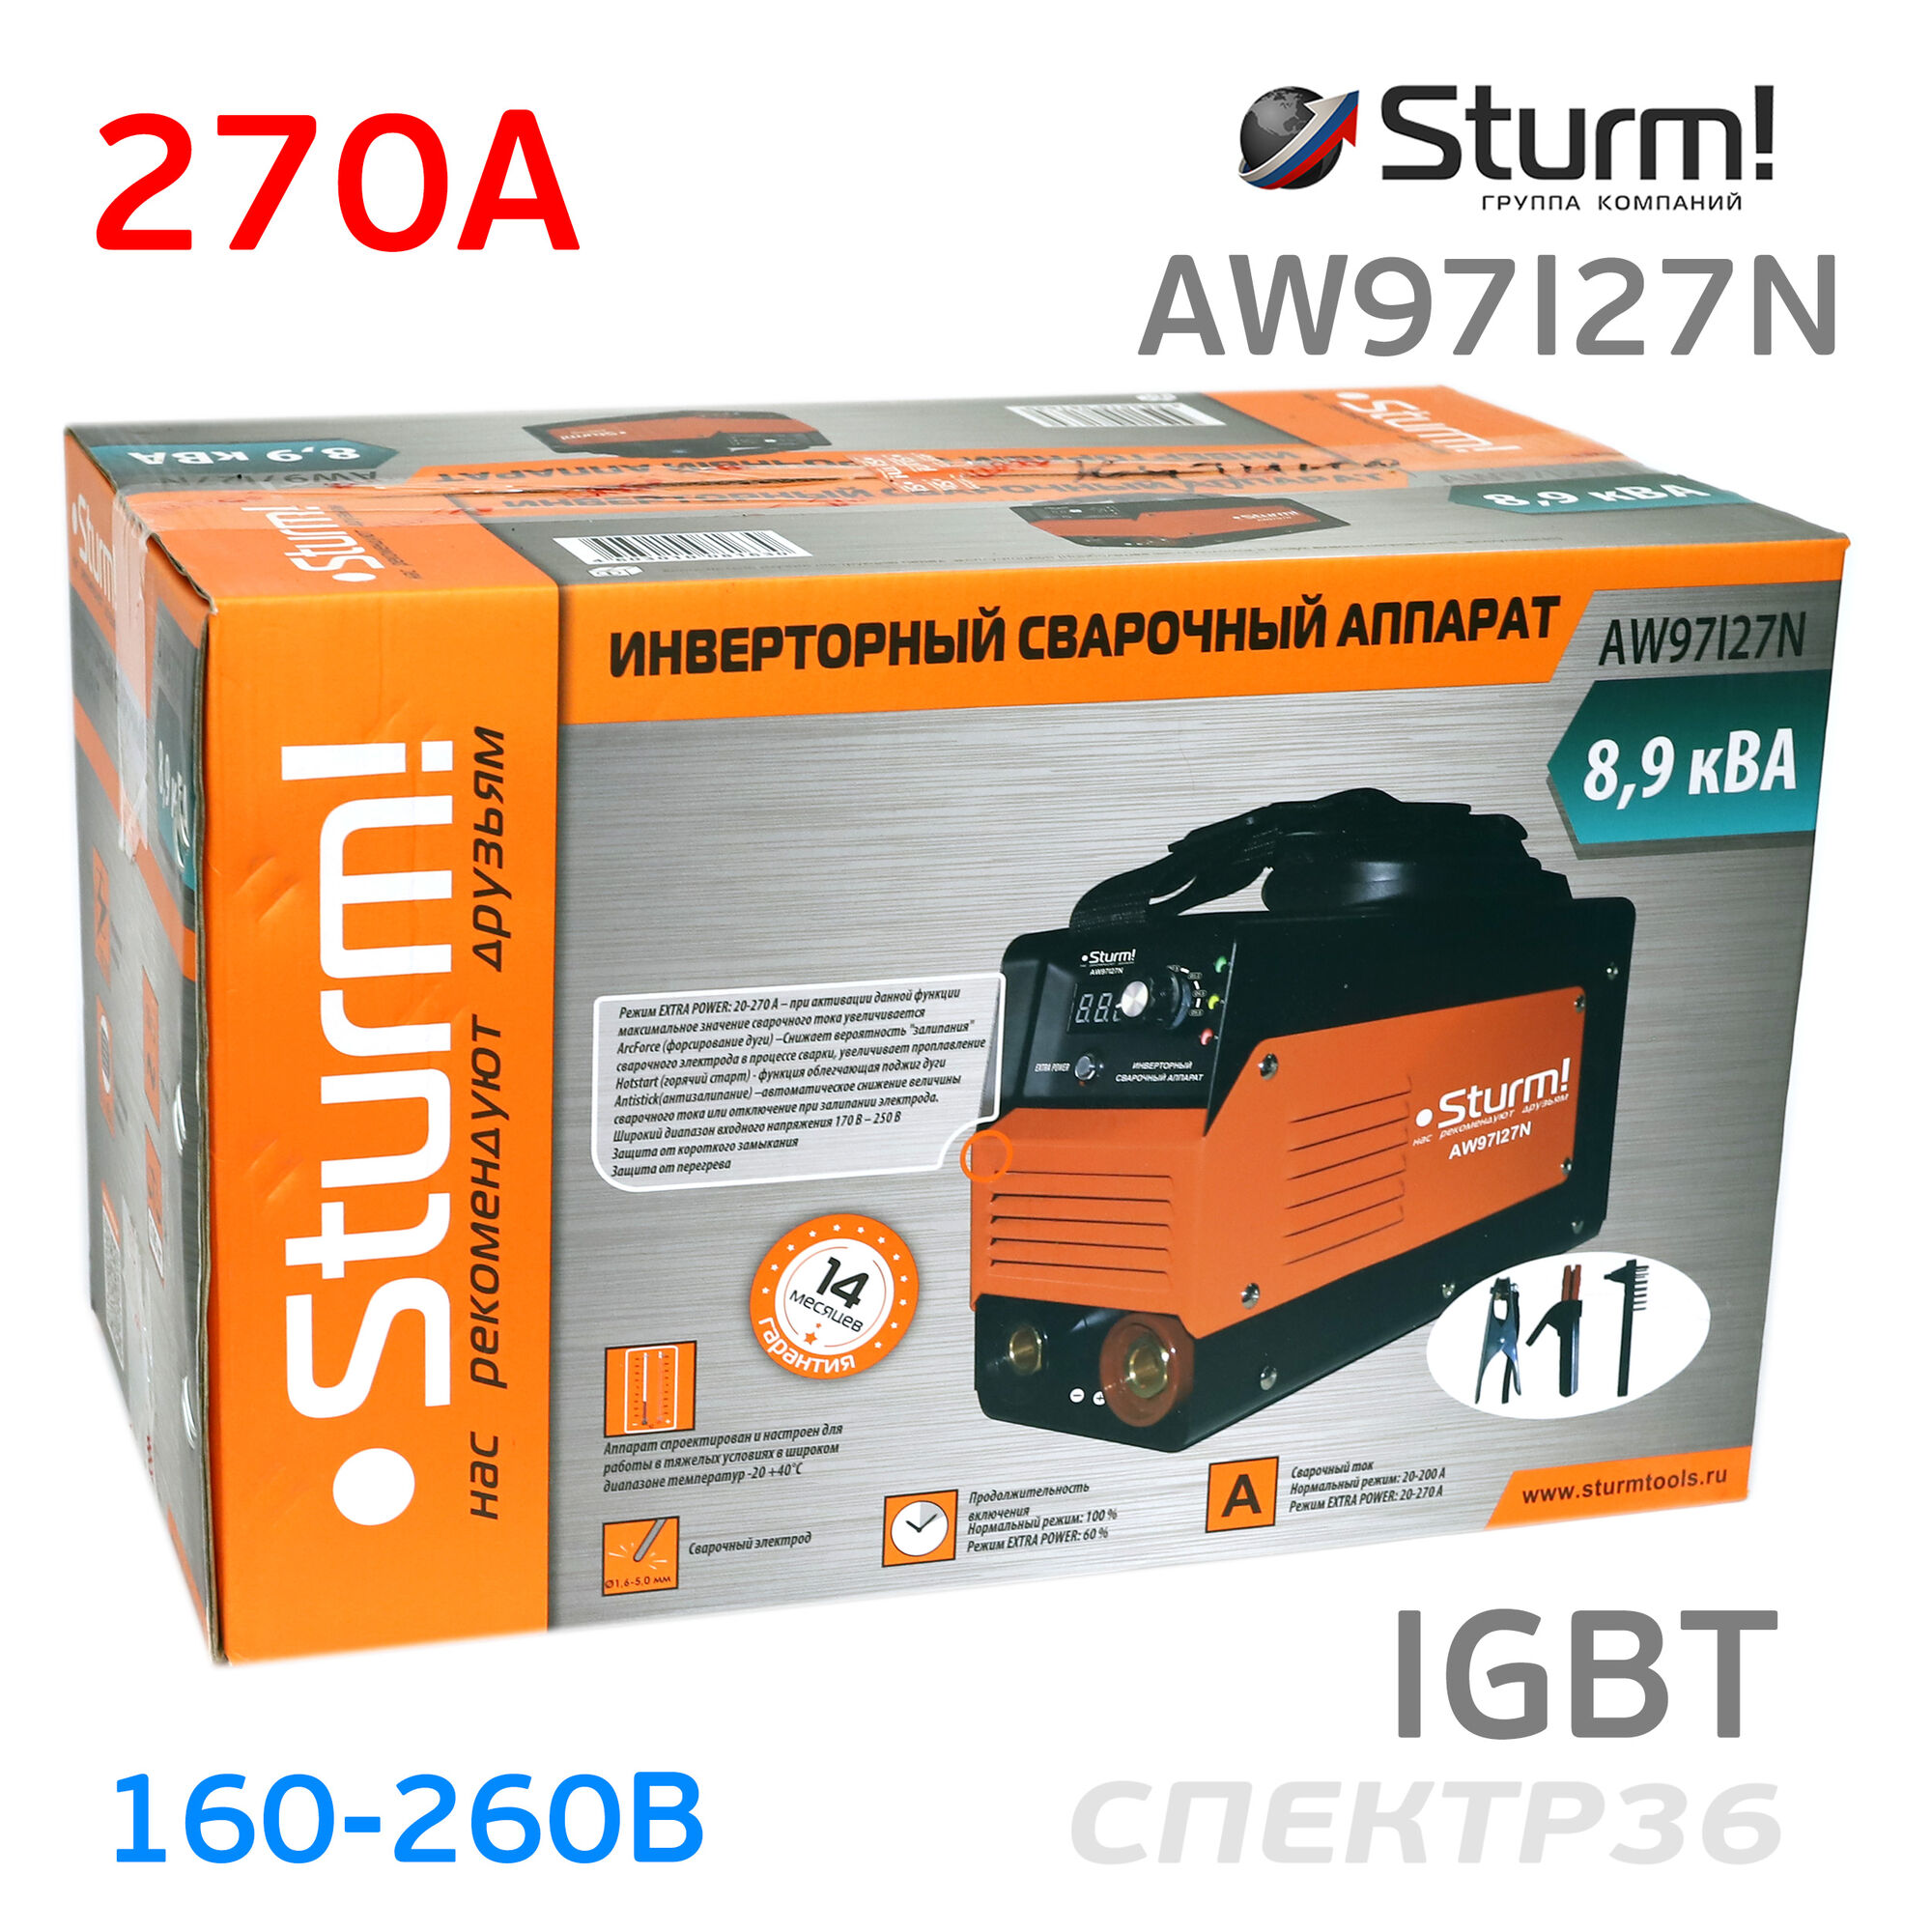 Инвертор Sturm AW97I27N (160-260В, 270 А) IGBT сварочный 6